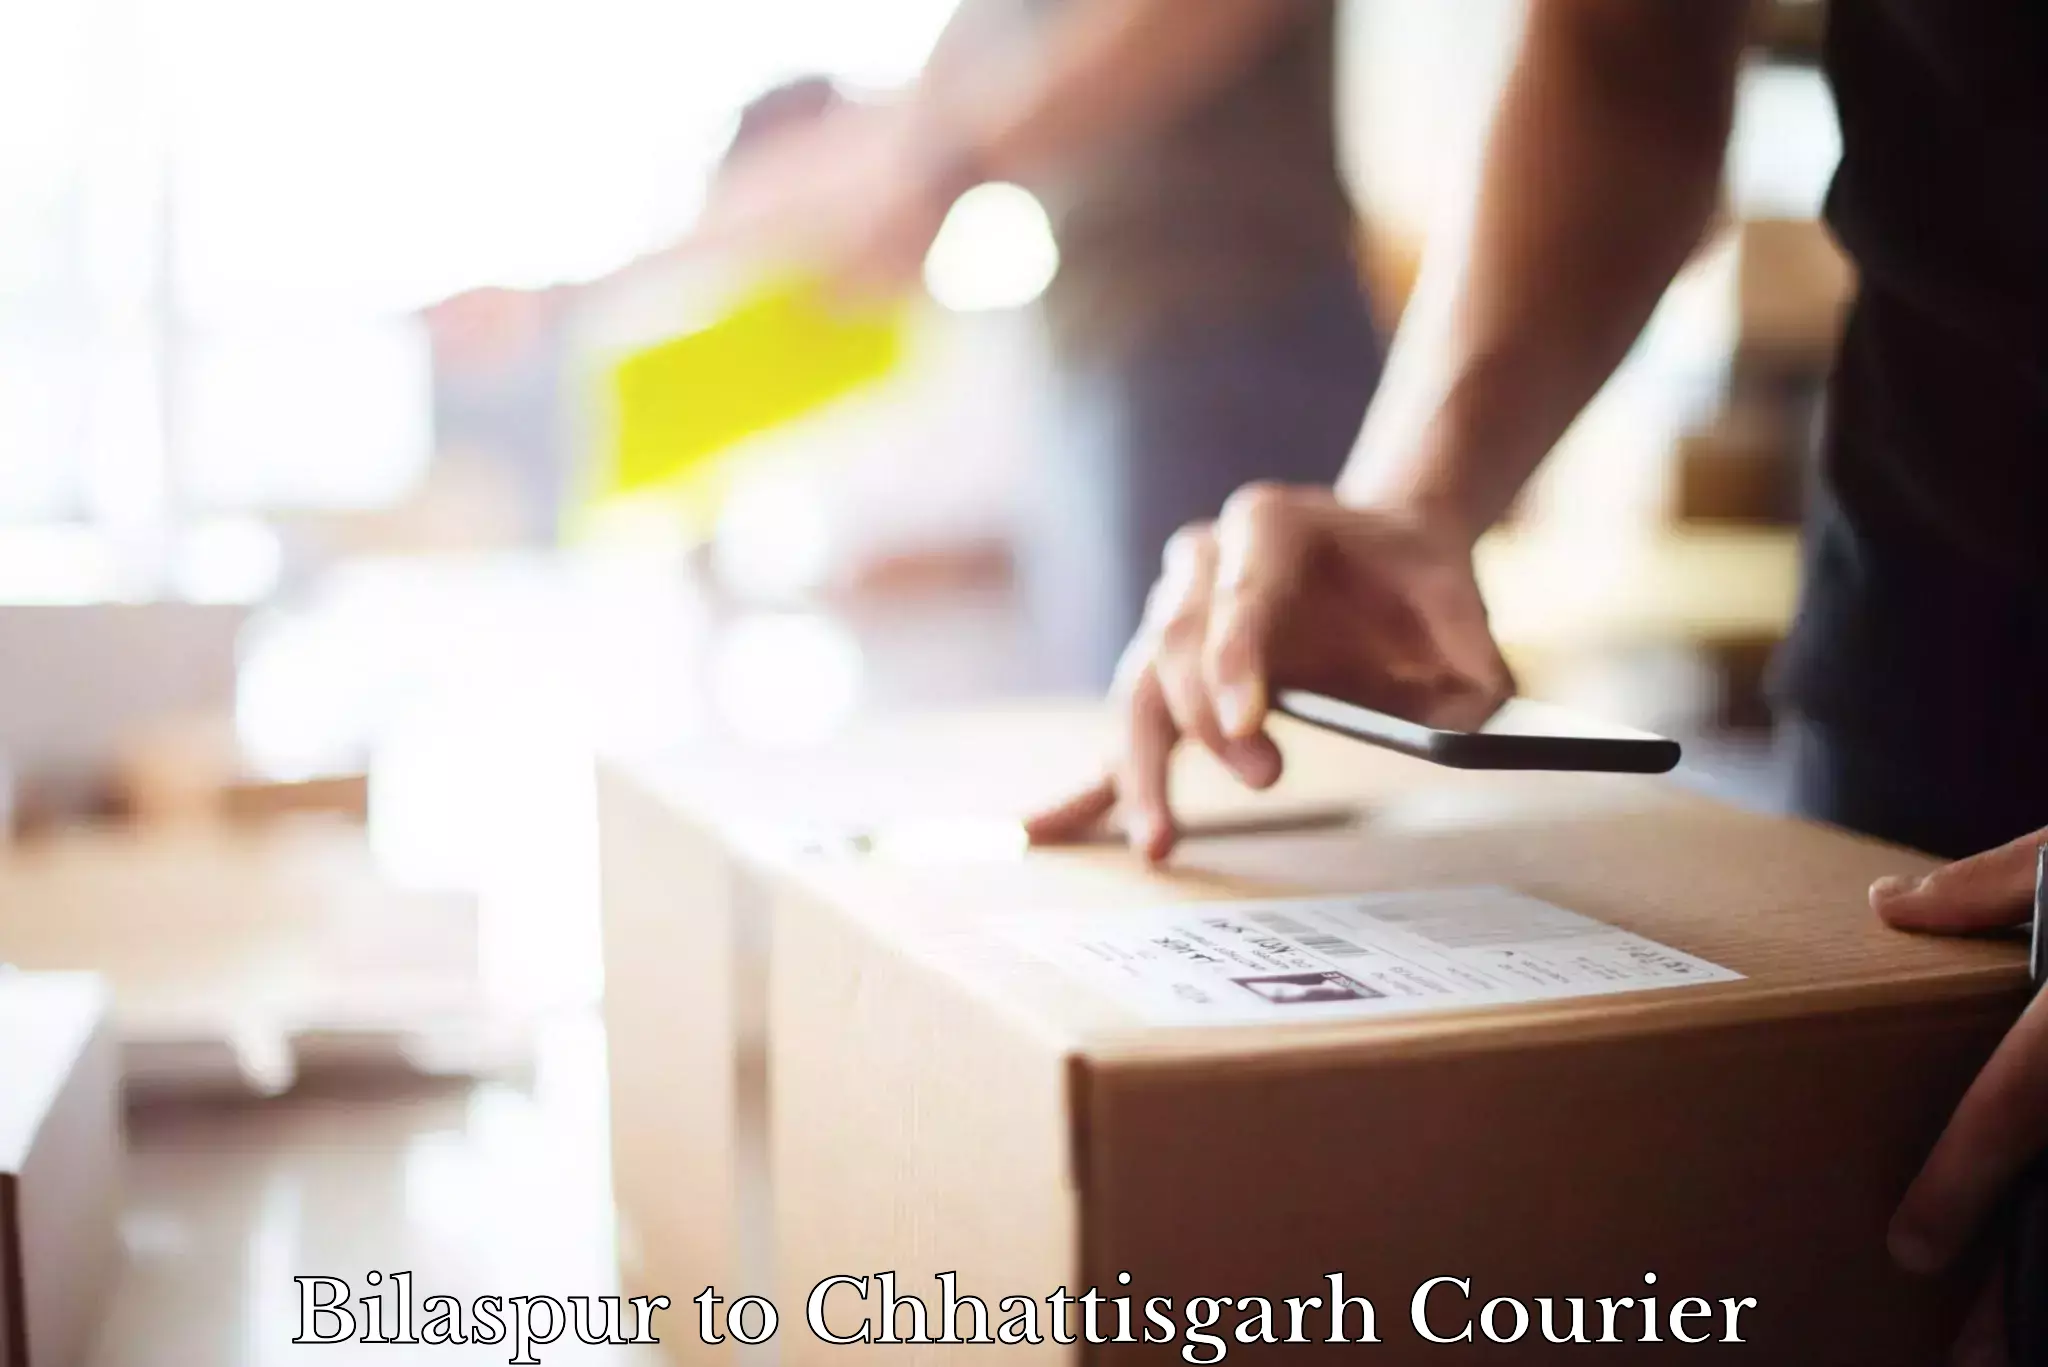 Courier rate comparison in Bilaspur to Chhattisgarh